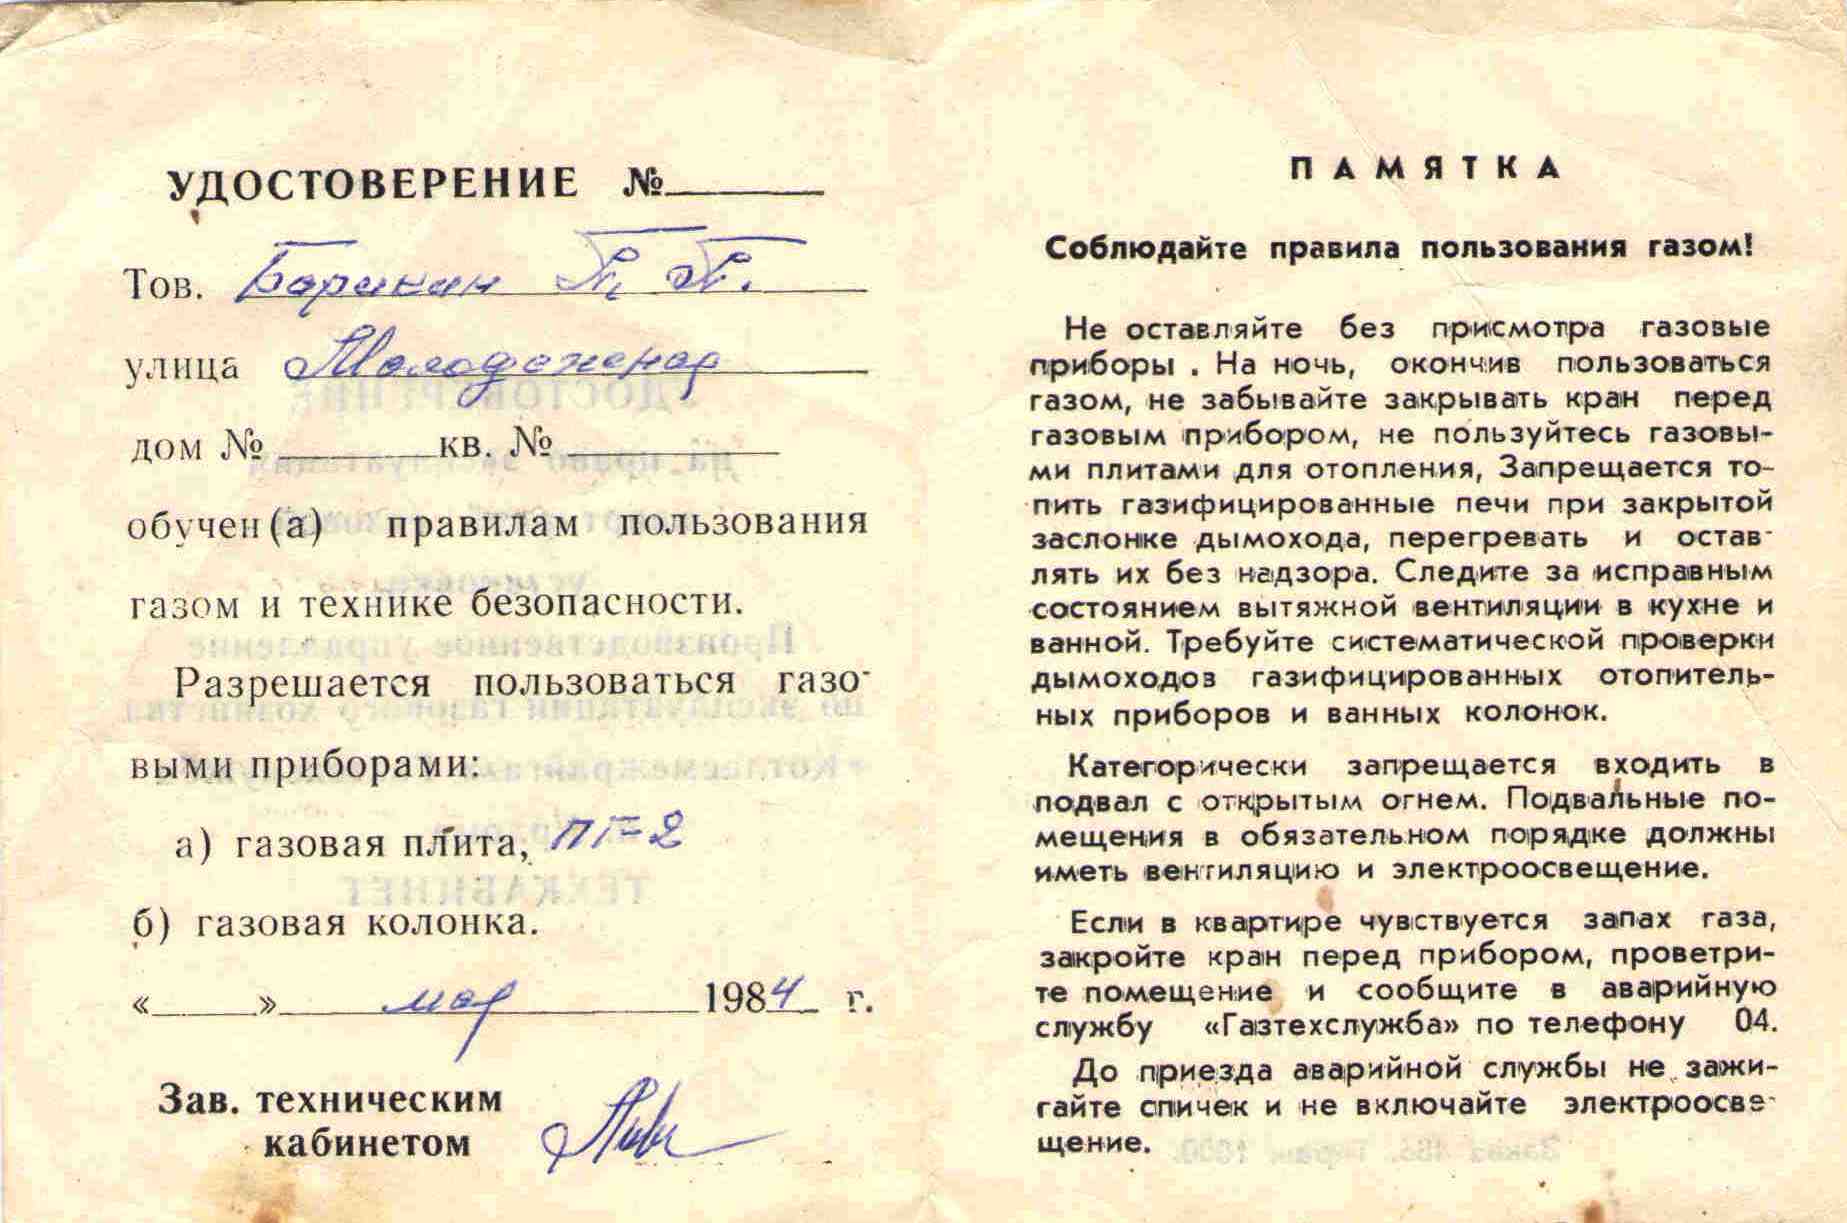 104. Удостоверение на эксплуатацию, газовой плитой, Барыкин ПП, 1984